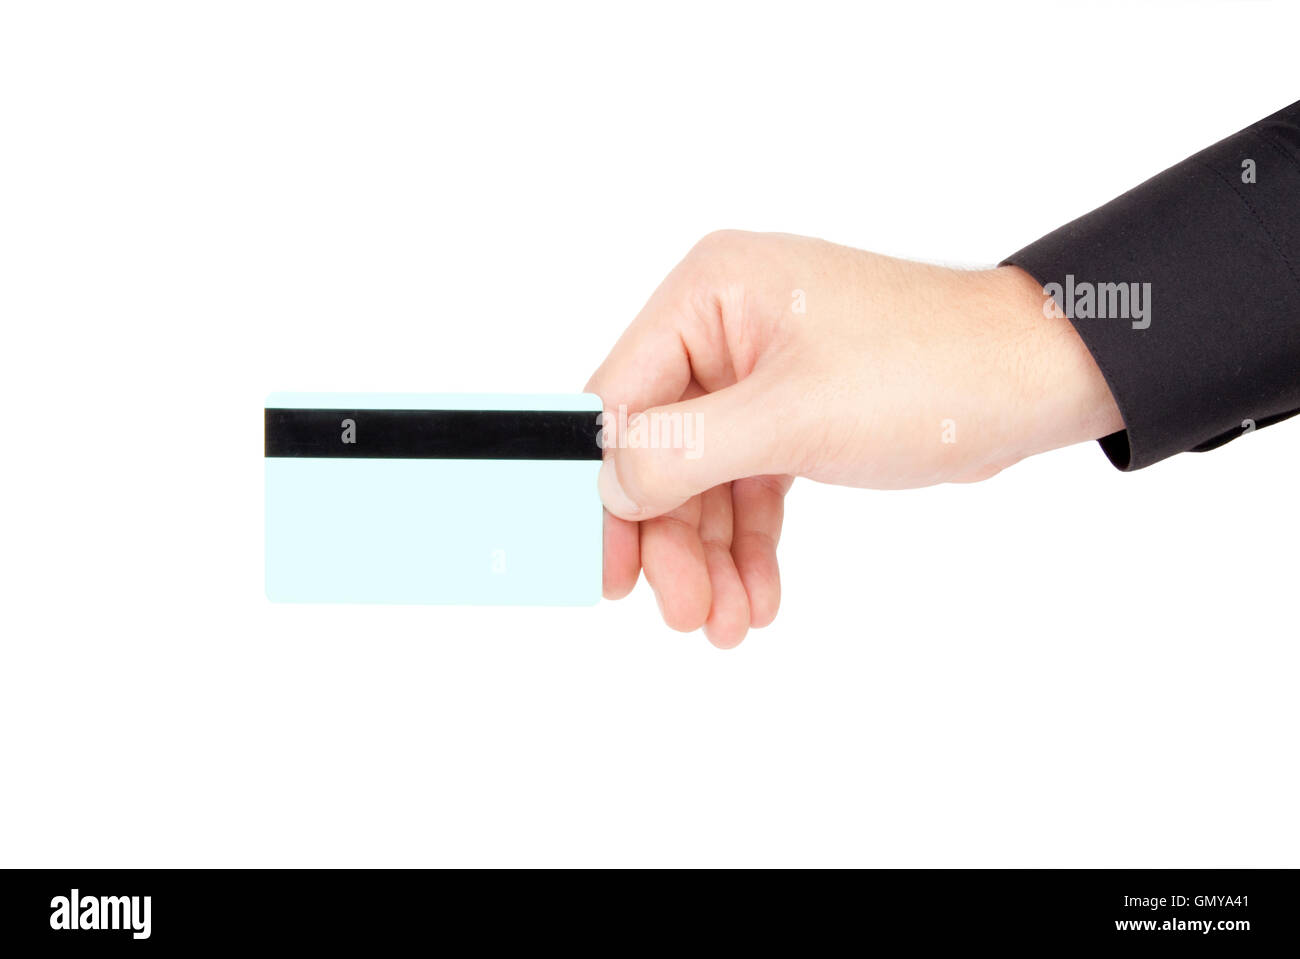 Mano sujetando la tarjeta de crédito Foto de stock